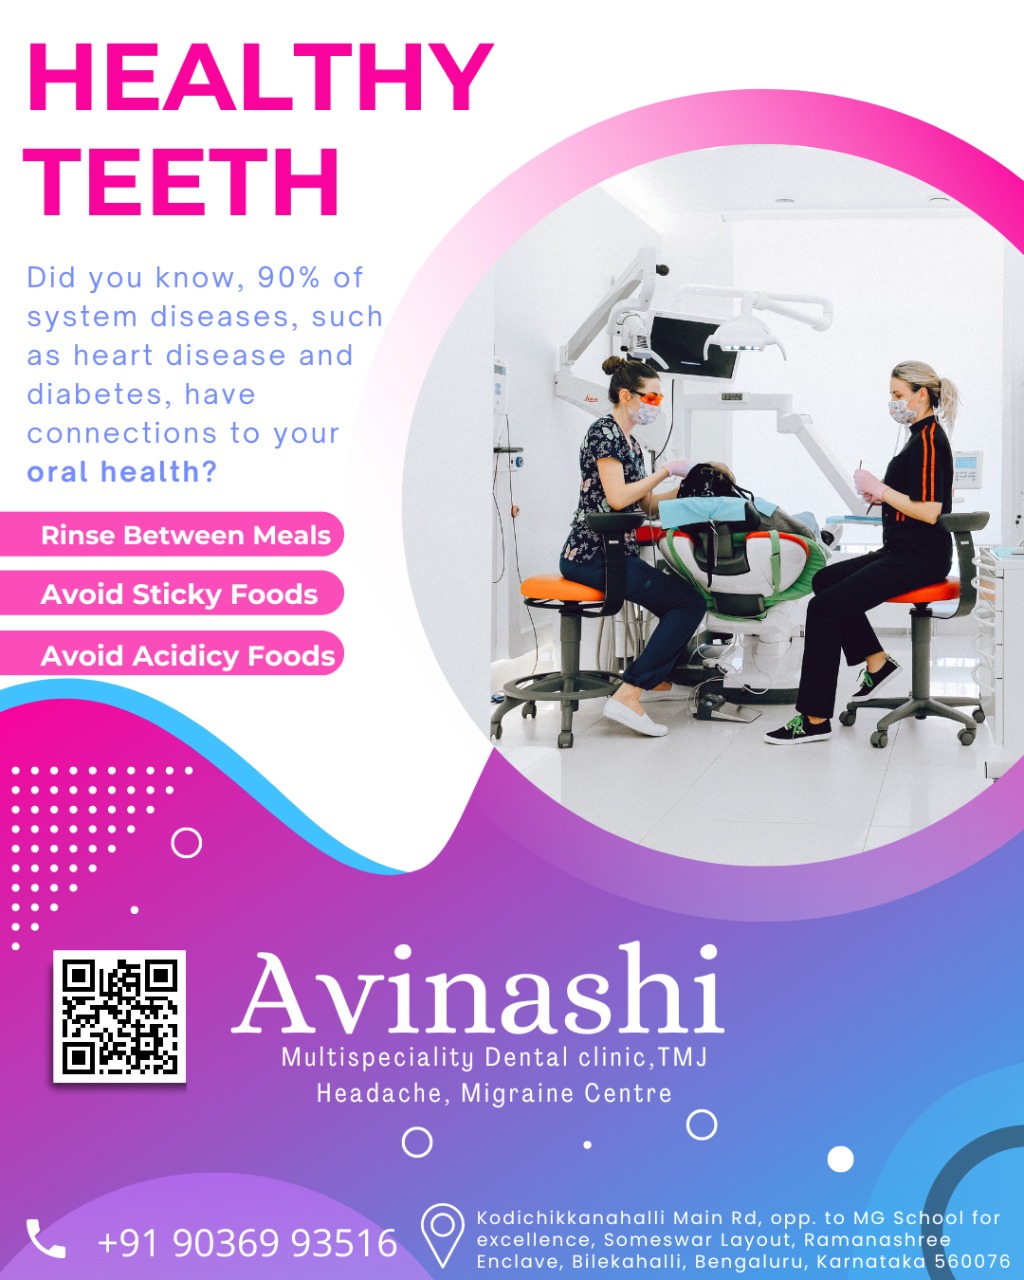 Avinashi Multispecialty Dental Cinic - Album - HEALTHY TEETH